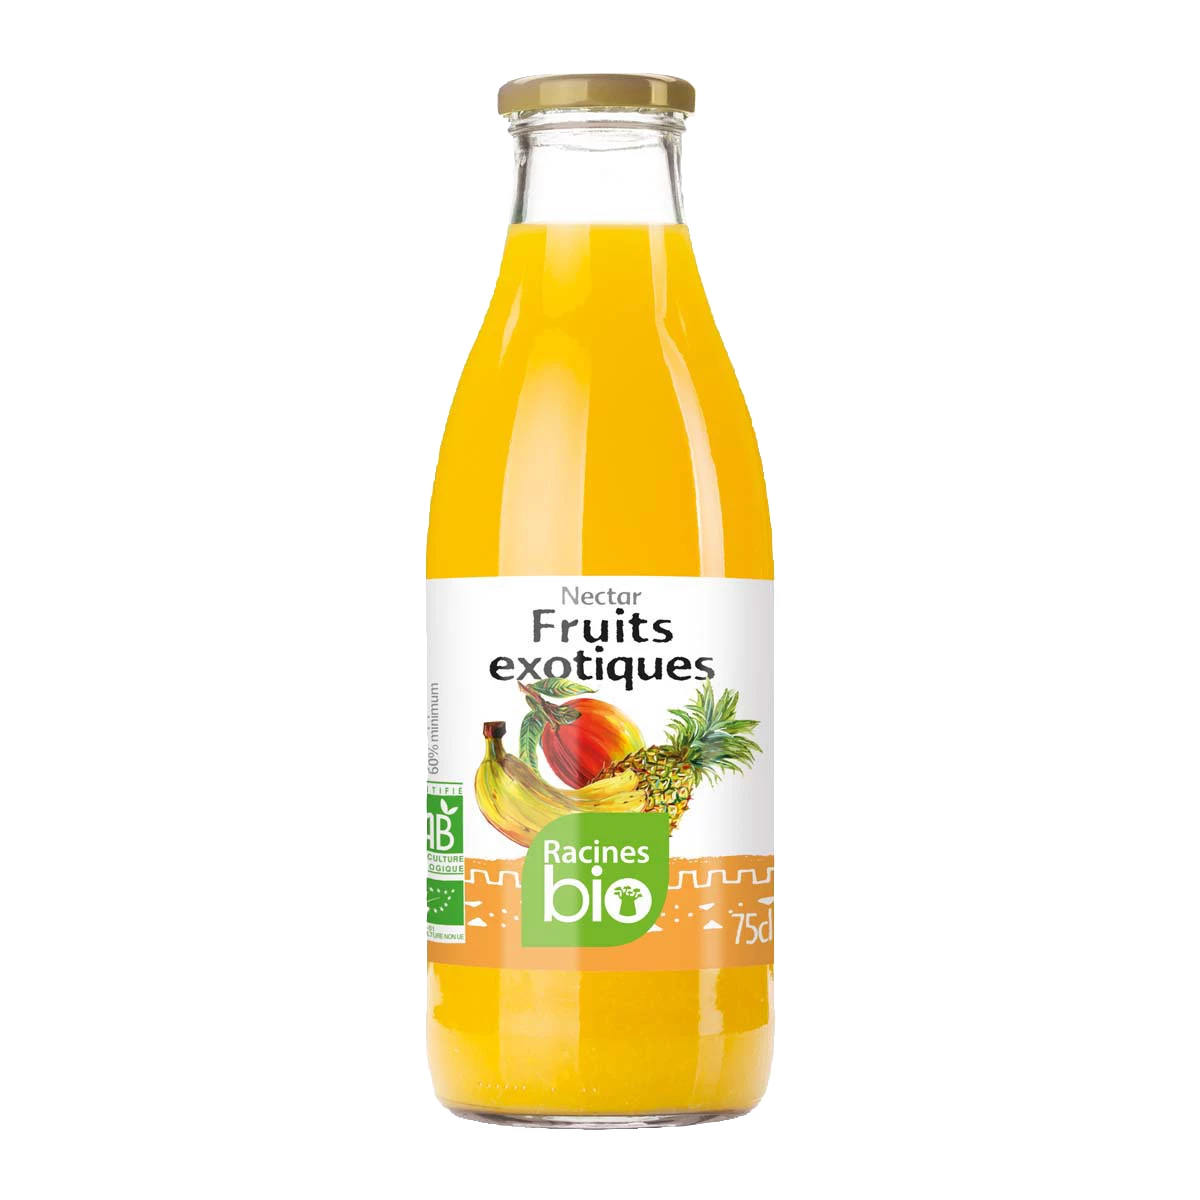 Néctar de Frutas Exóticas (6 X 75 Cl) - Racines Bio